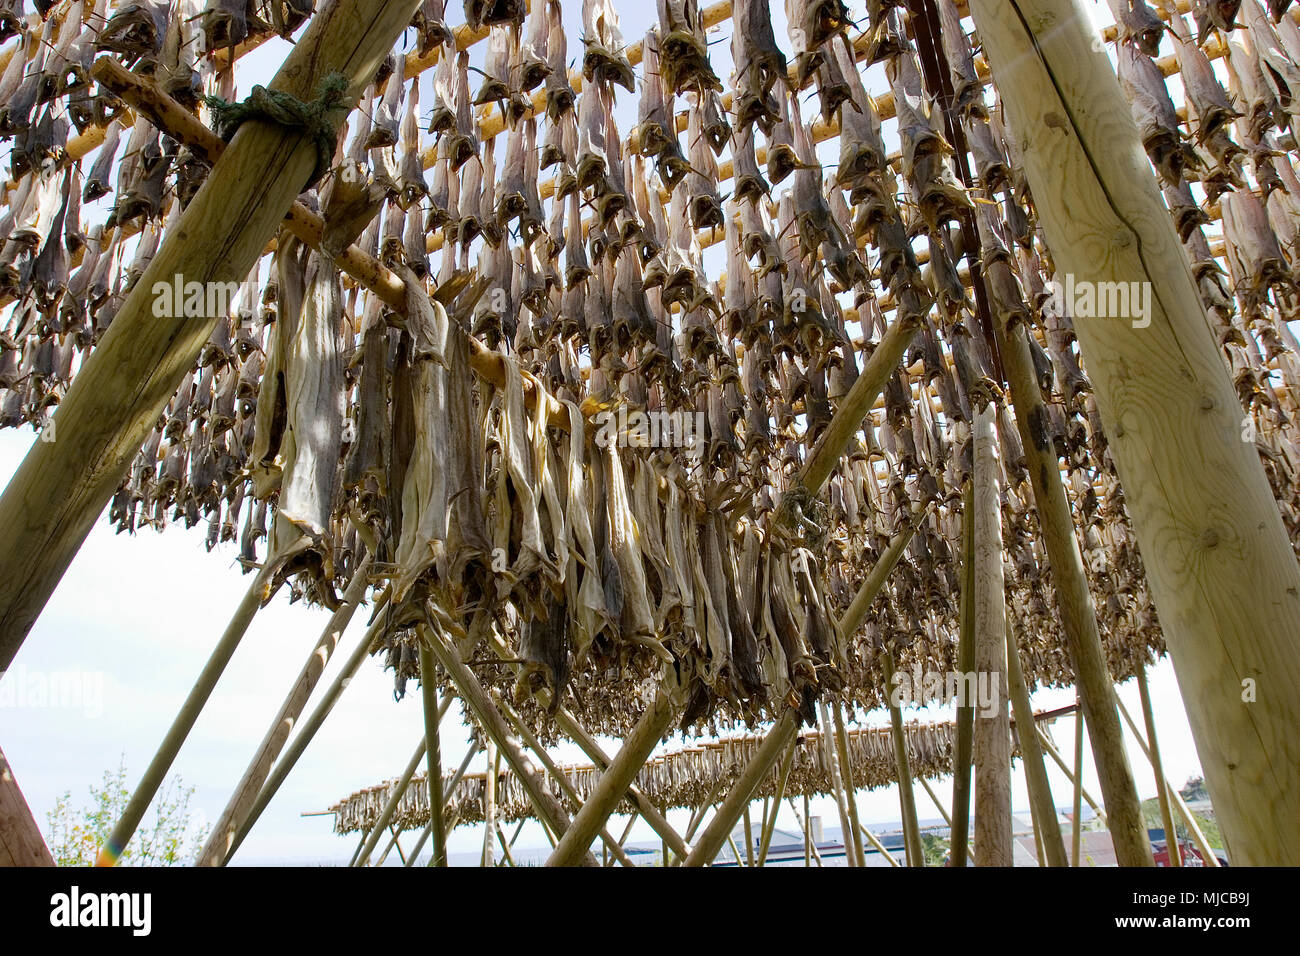 Trockenfischgestelle in den Lofoten Foto Stock